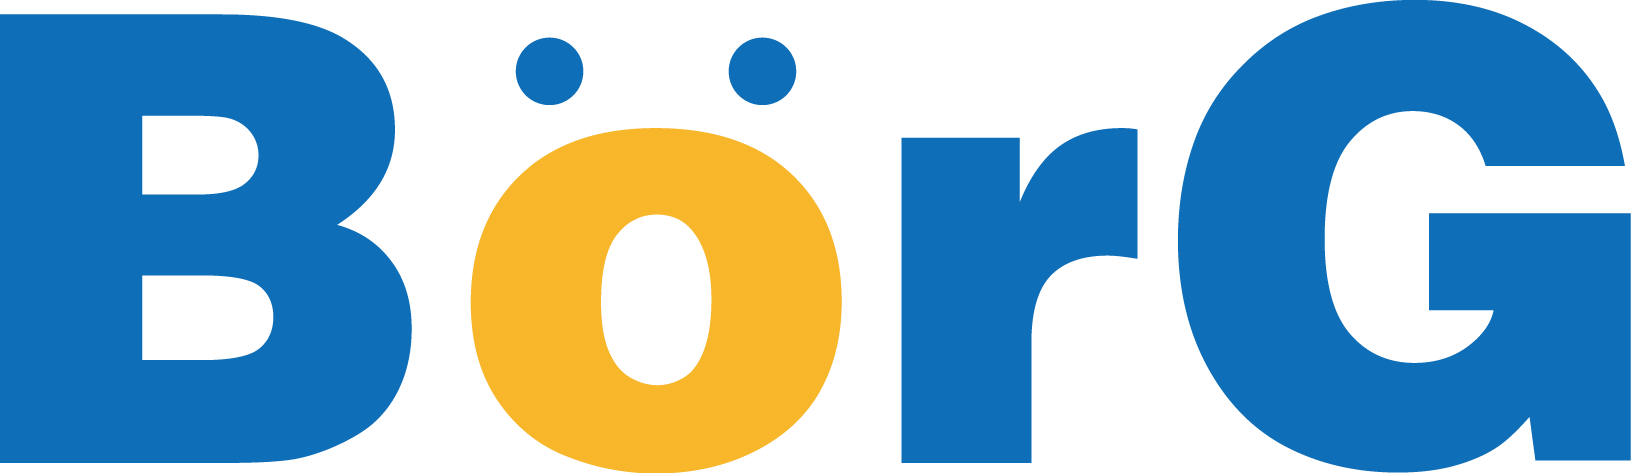 博格科技logo